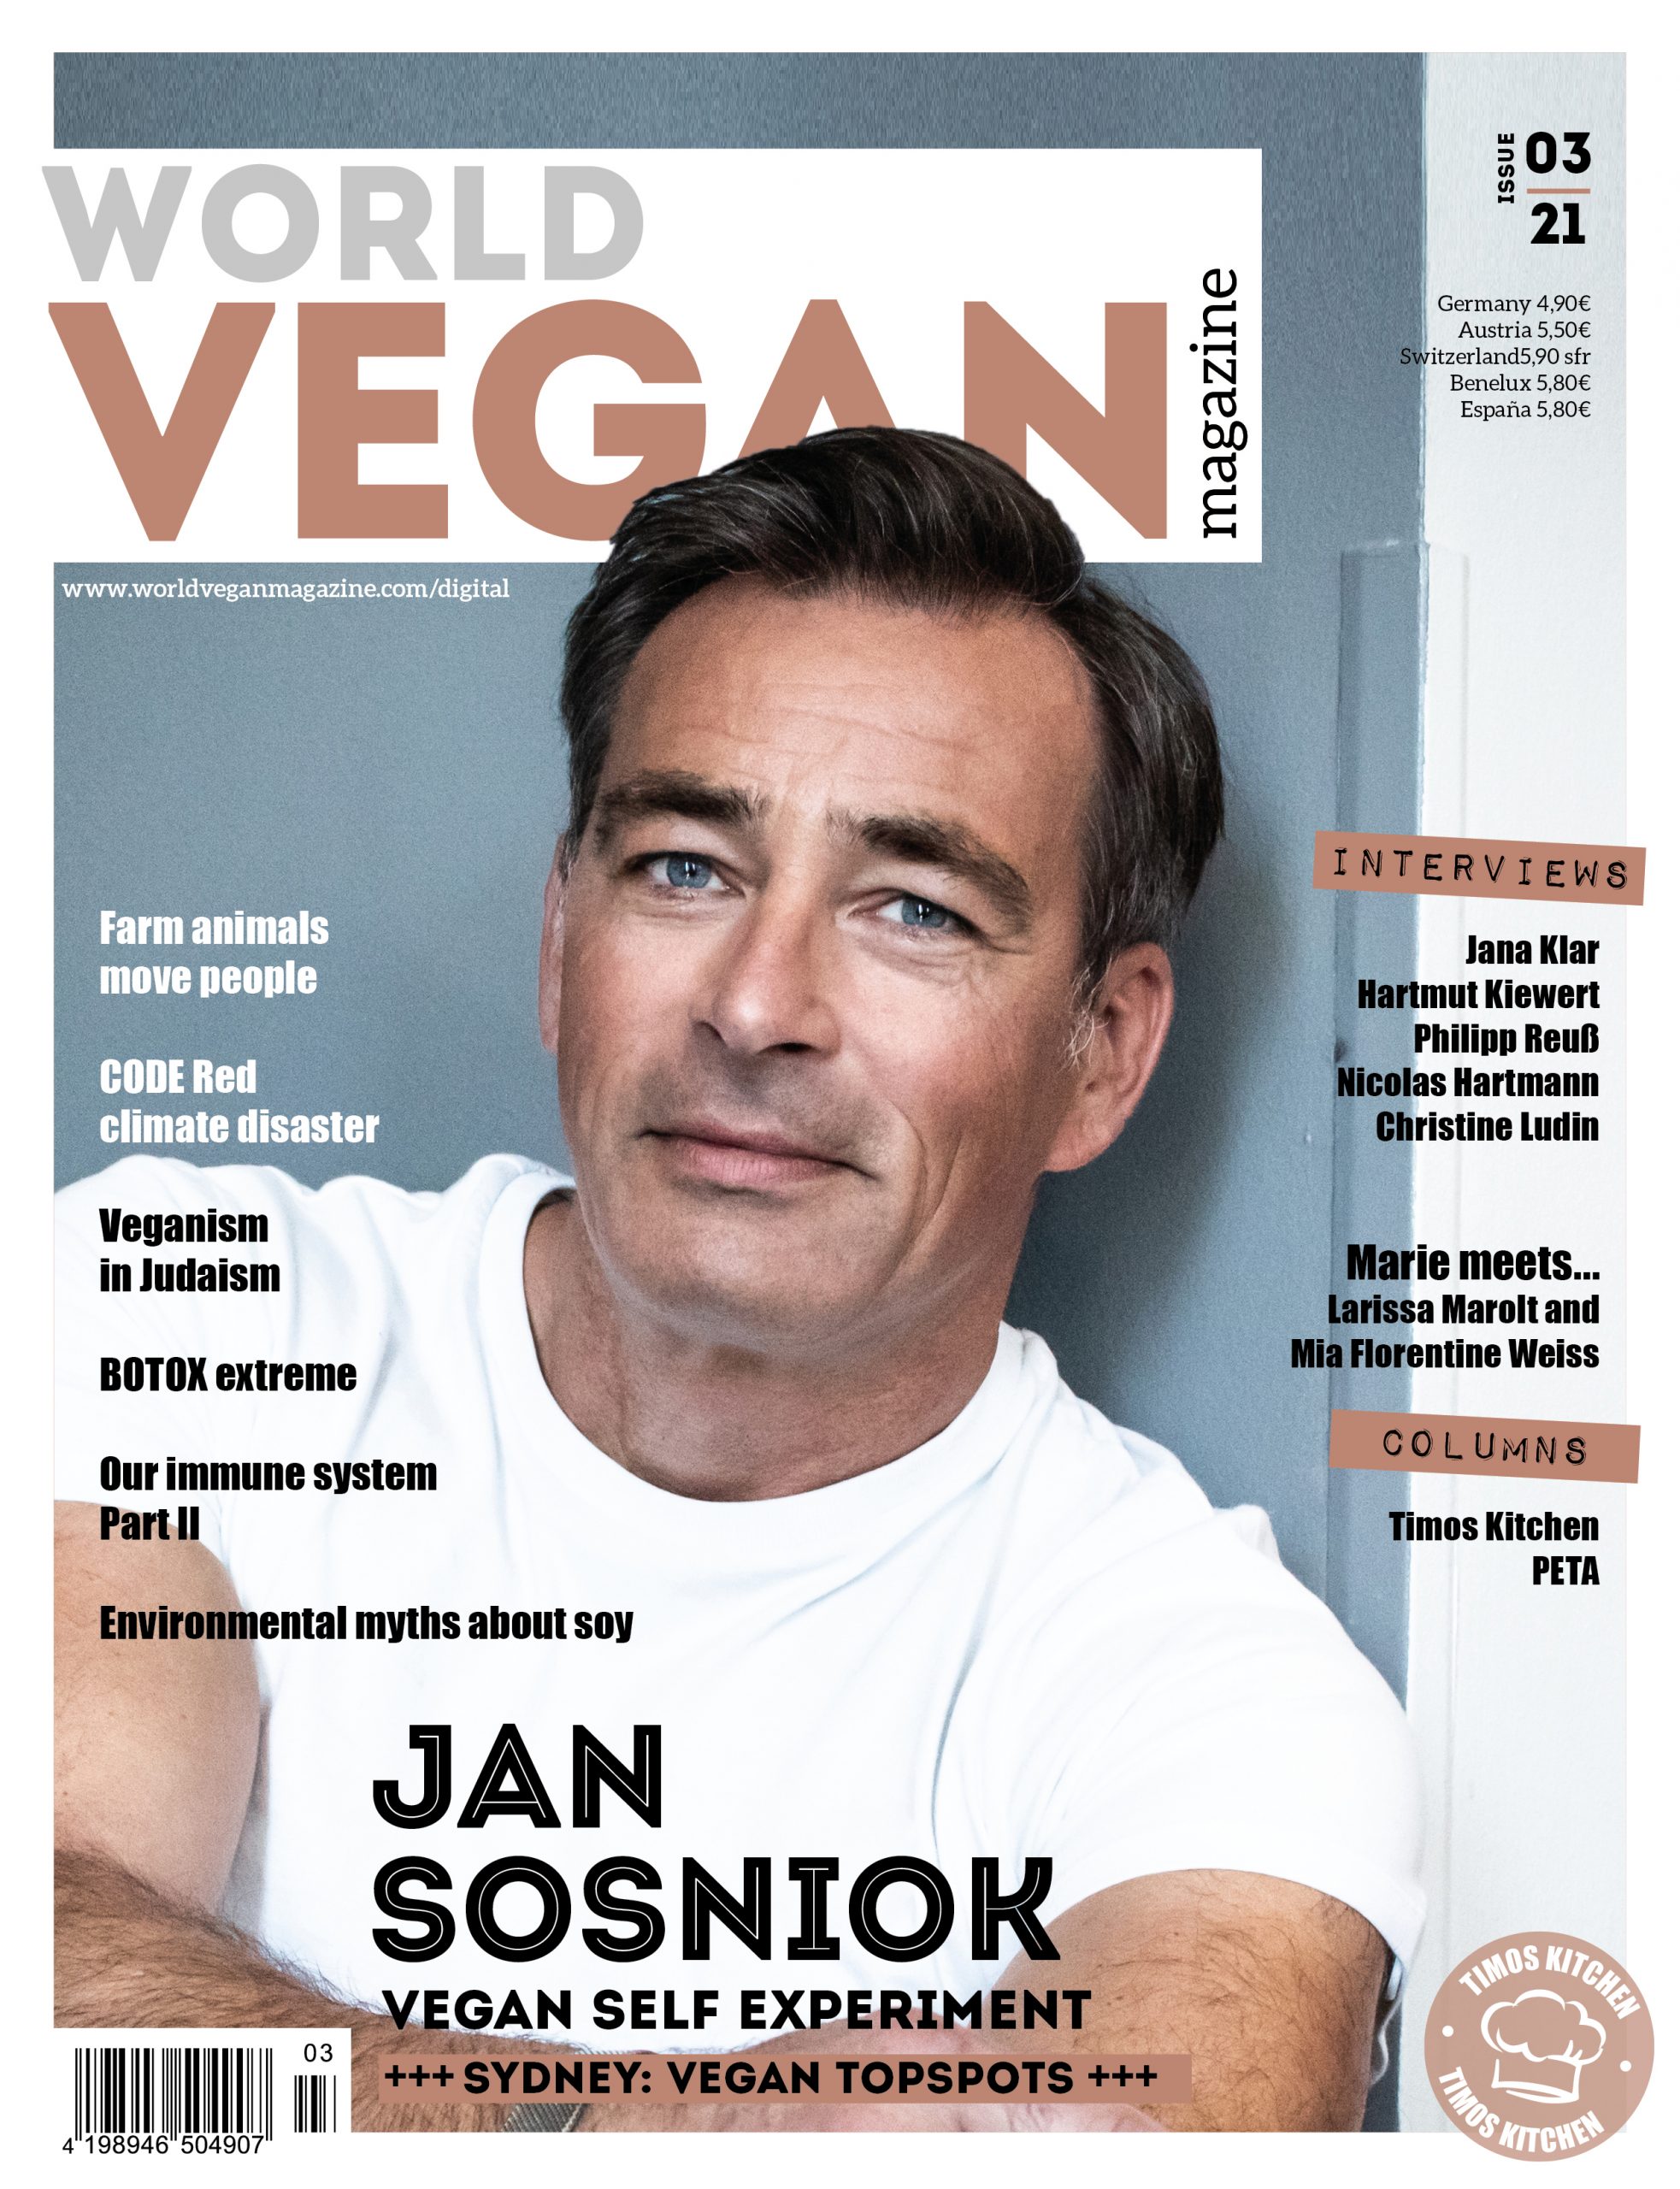 World Vegan Magazine 03/21